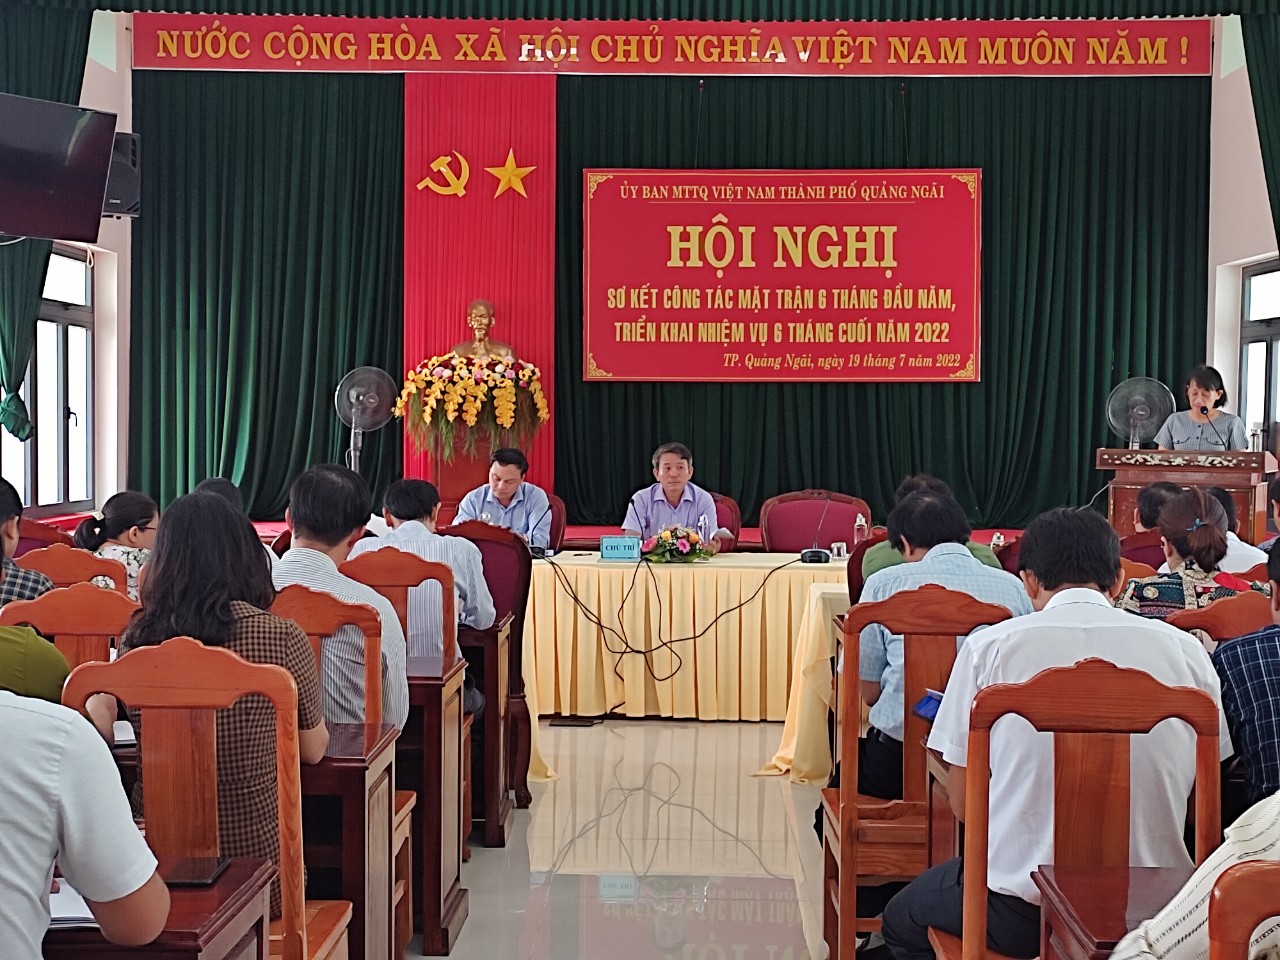 Thành phố Quảng Ngãi: Sơ kết công tác Mặt trận 6 tháng đầu năm 2022